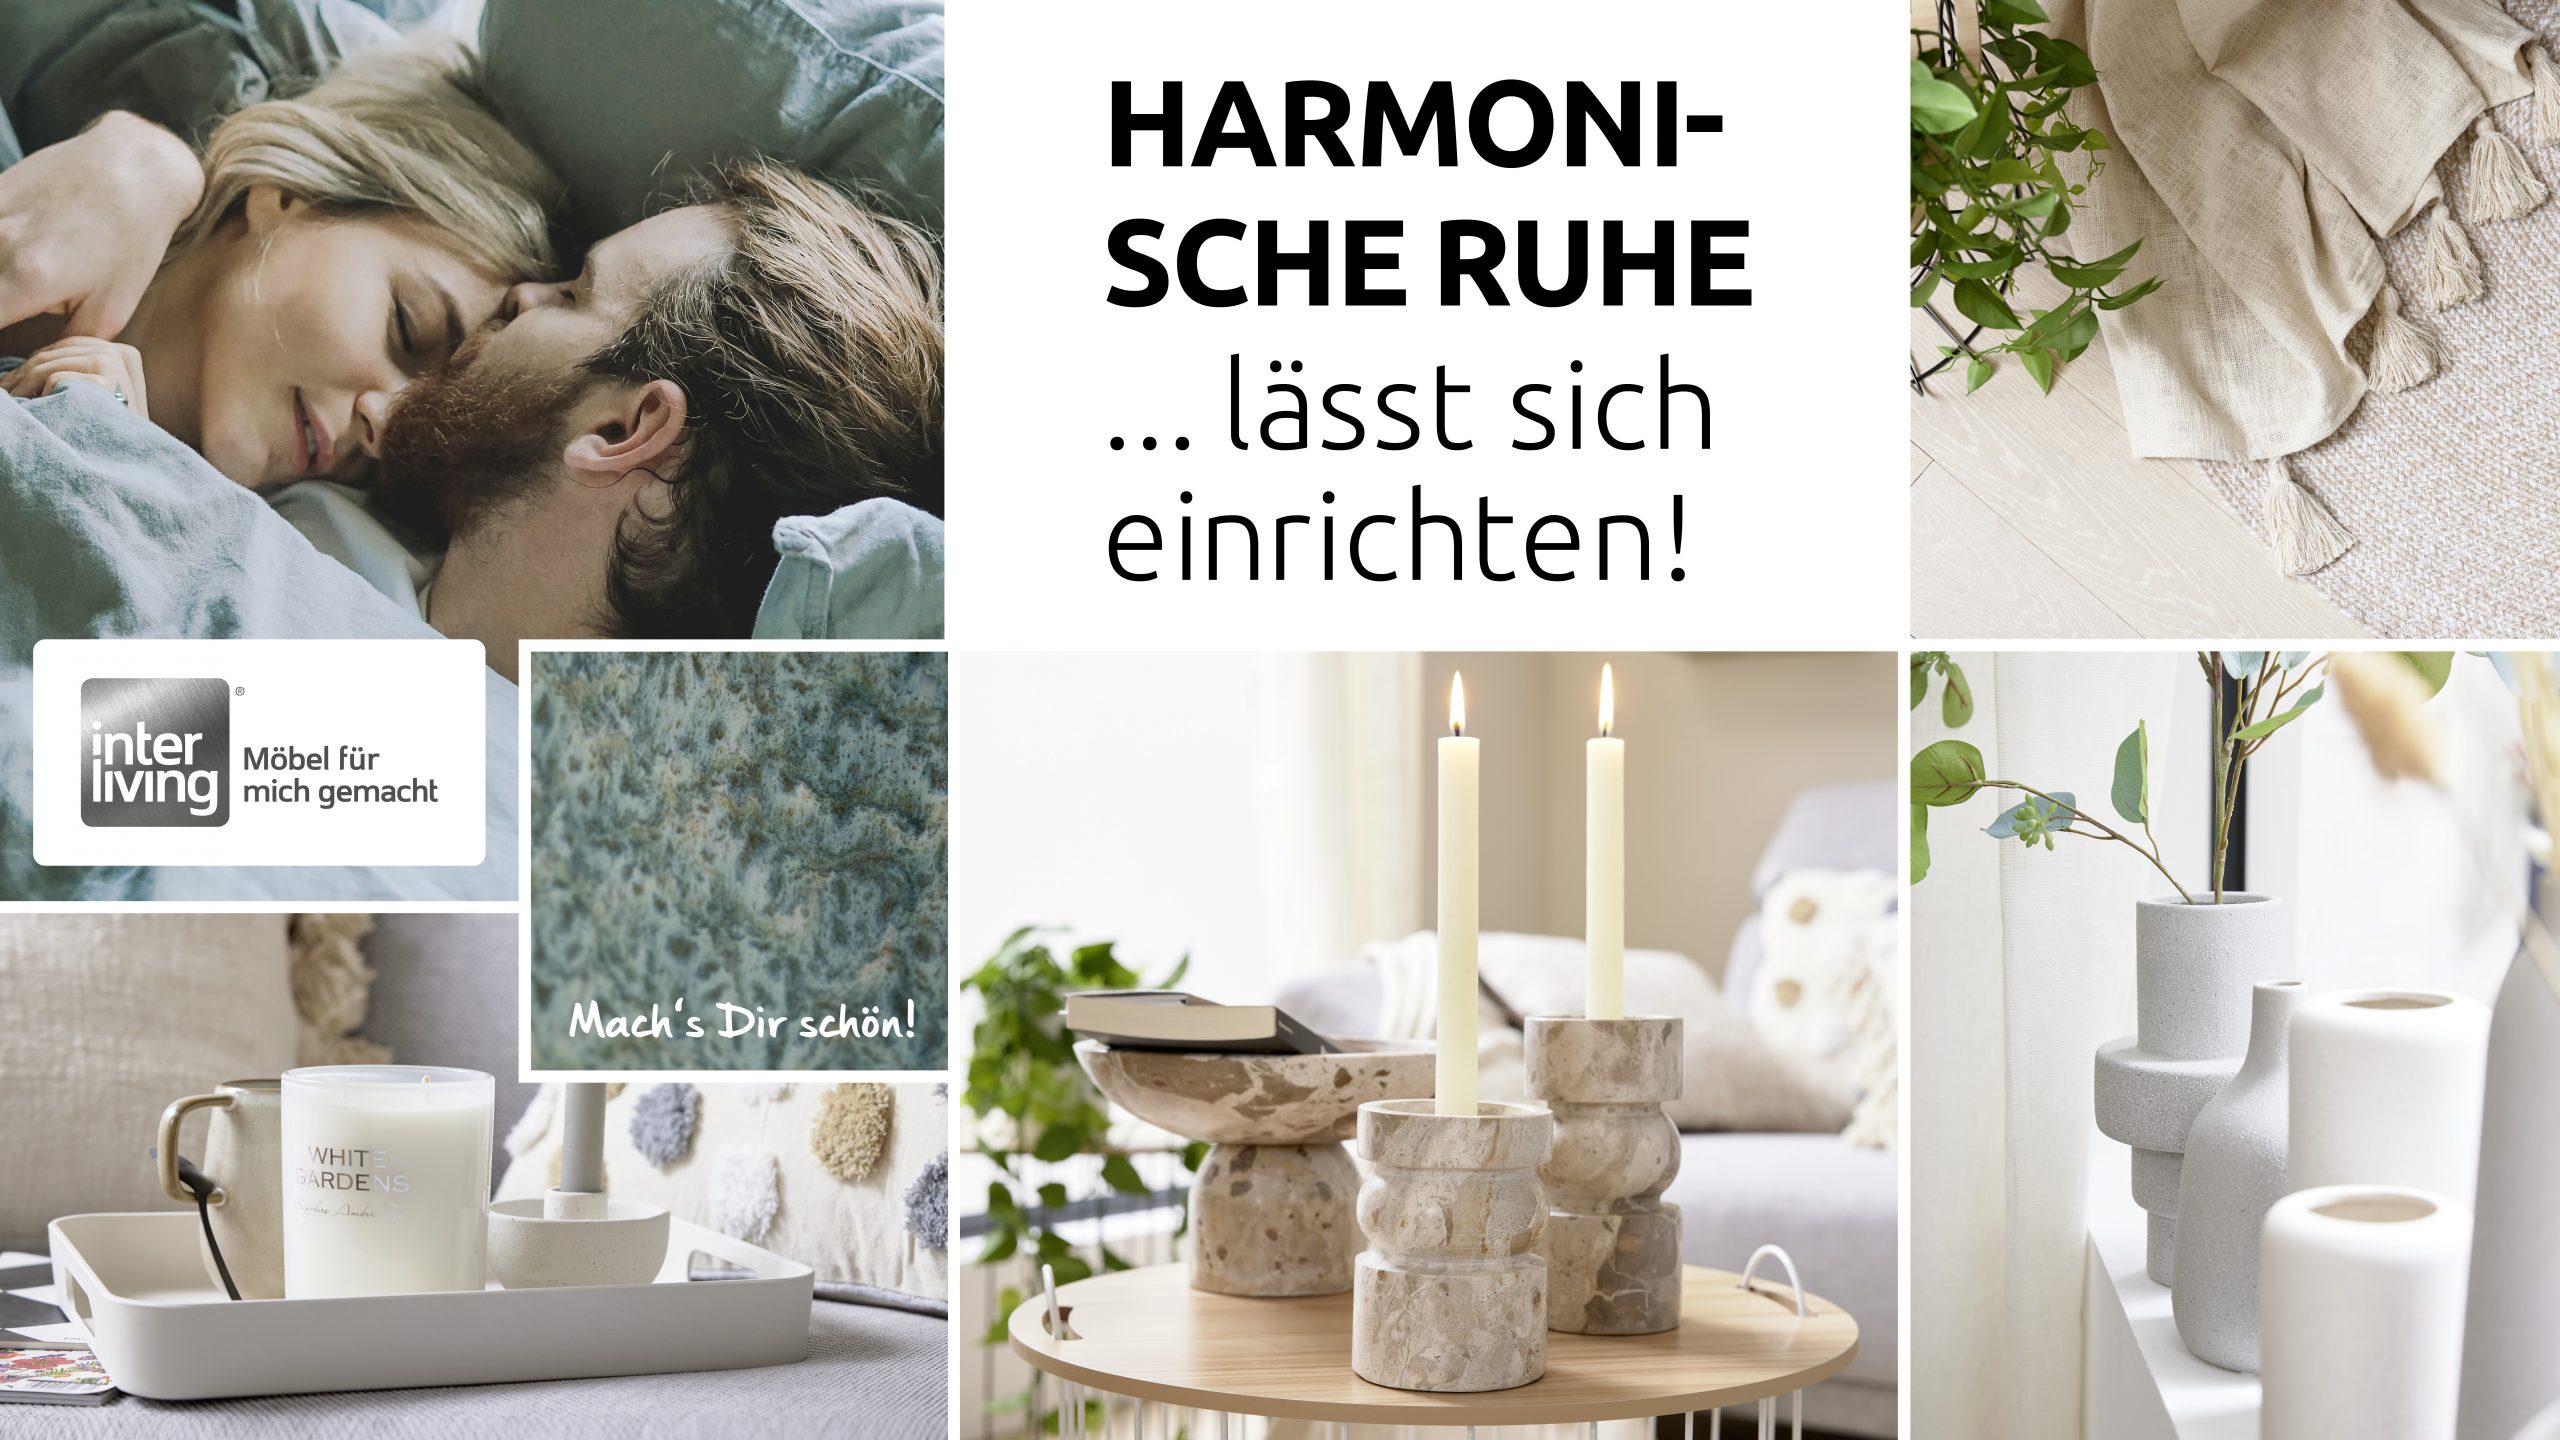 Die Trends für Interliving: Harmonische Ruhe für Zuhause!